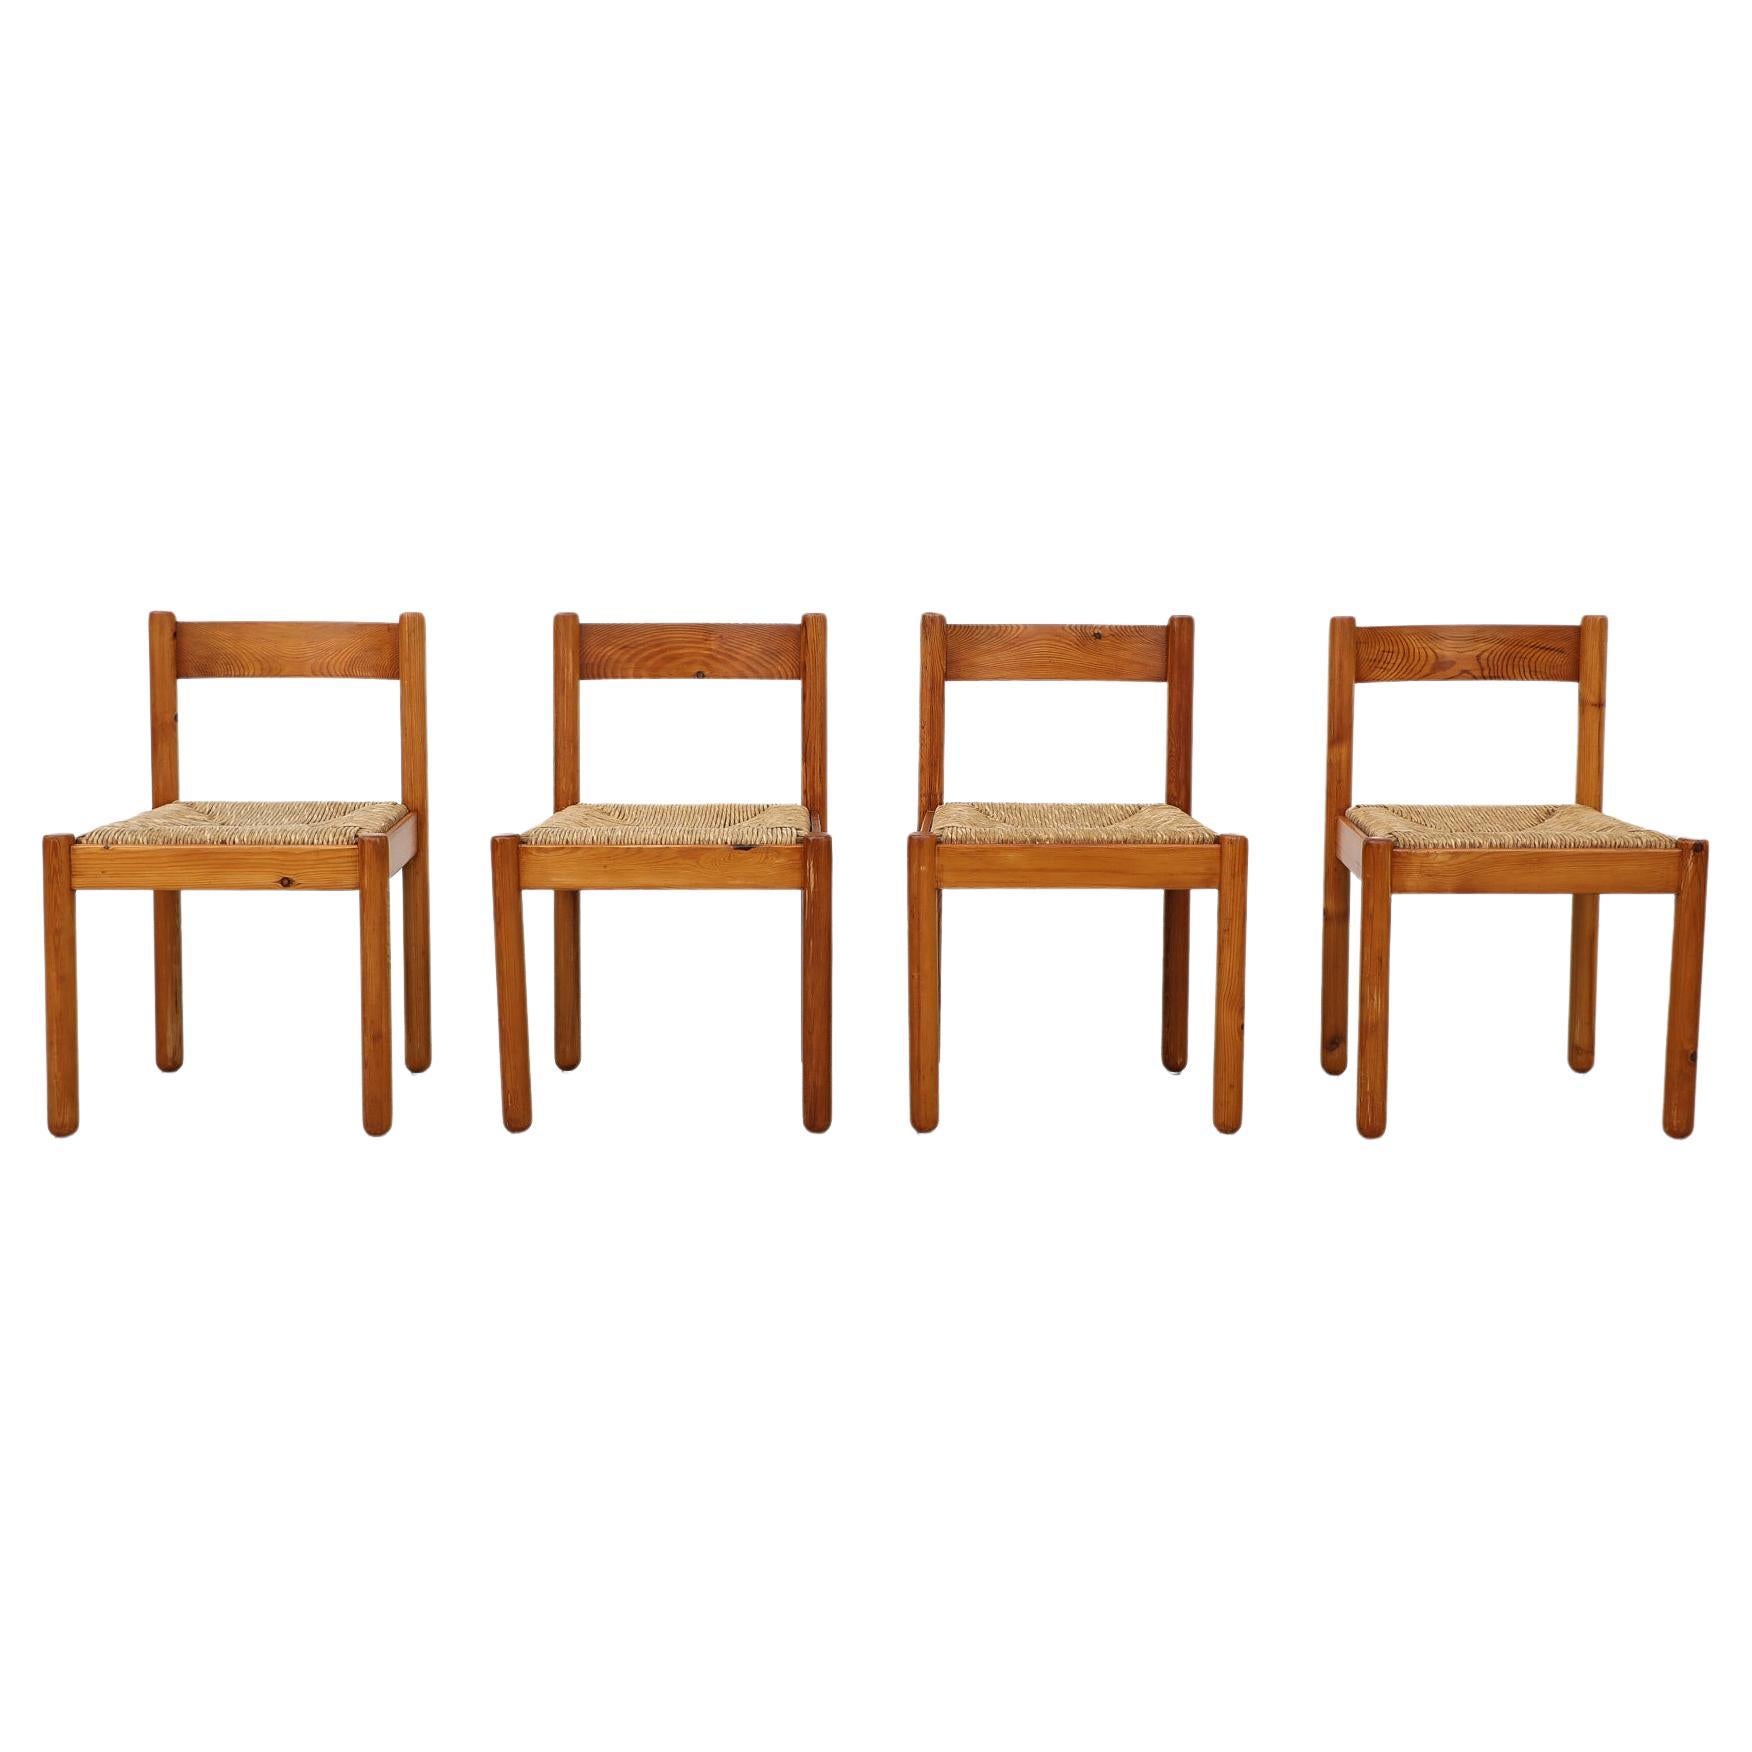 Satz von 4 Esszimmerstühlen aus Kiefernholz im Vico Magistretti-Stil mit Binsensitzen und abgerundeten Beinen